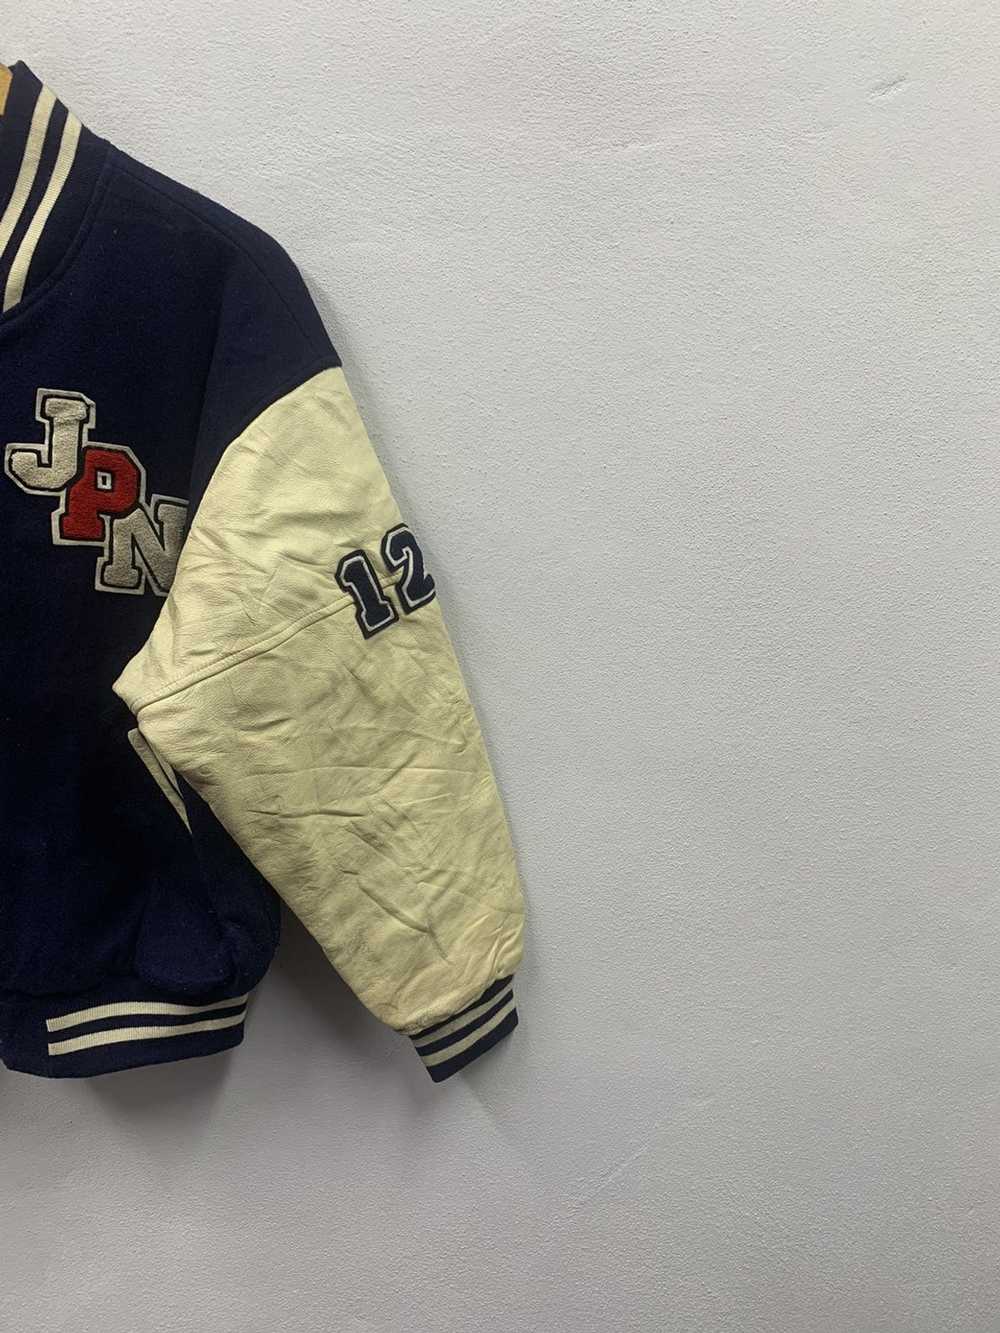 Hockey × Leather Jacket × Varsity Jacket Vintage … - image 4